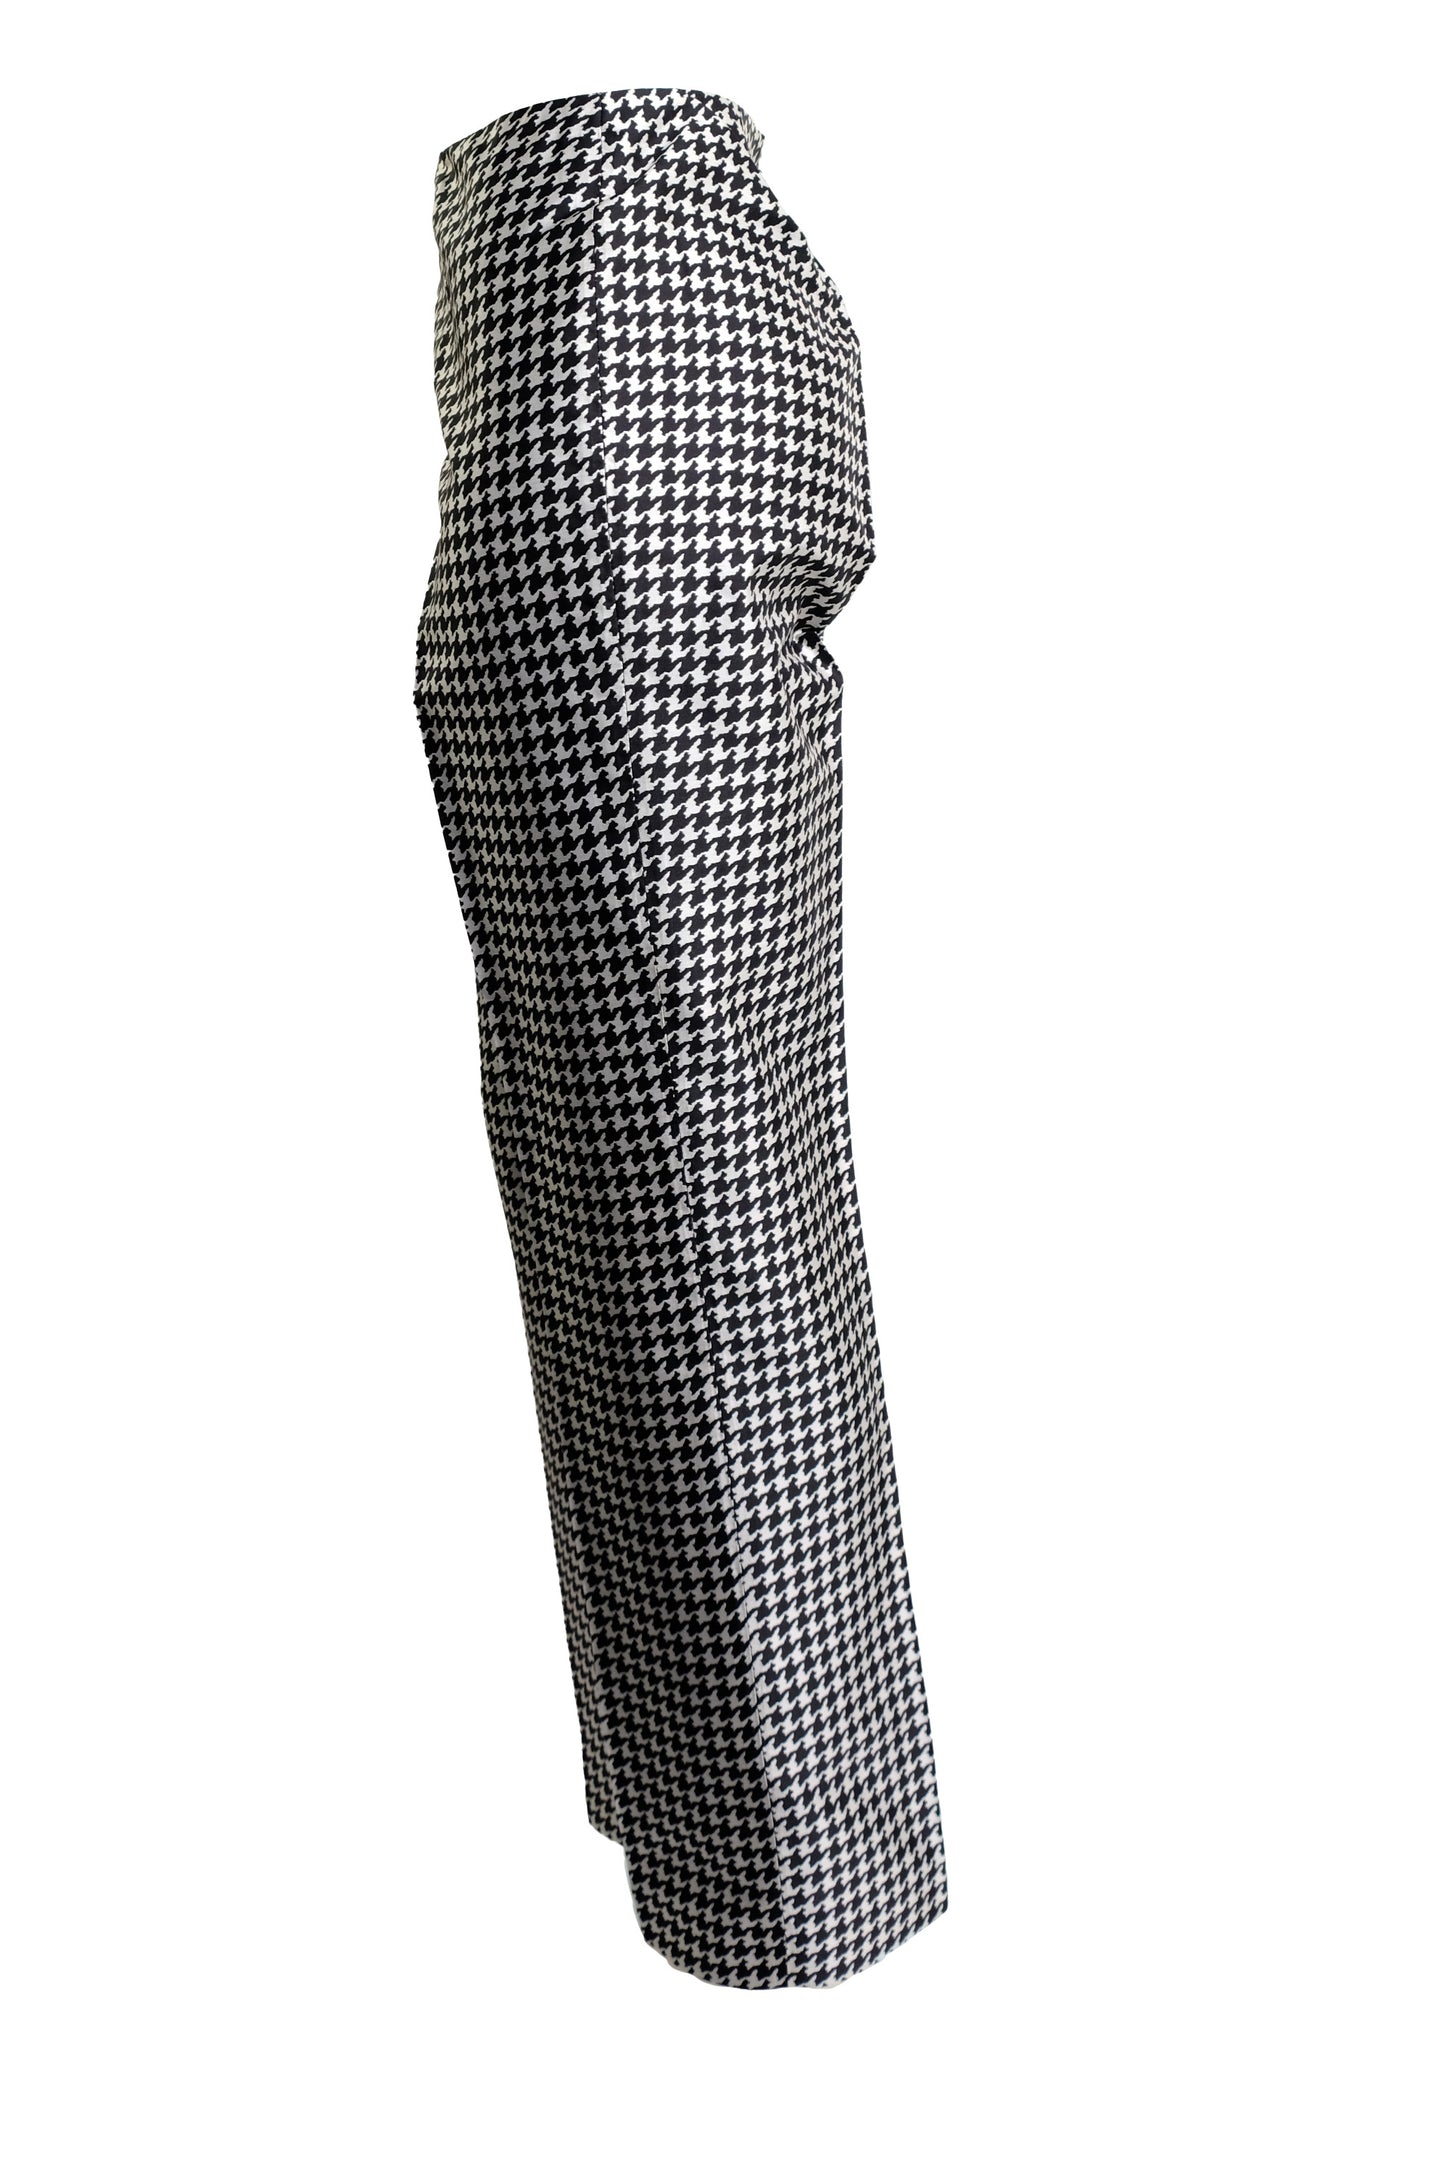 Ralph Lauren Straight Leg Trousers in Silk Pied de Poule, UK10-12